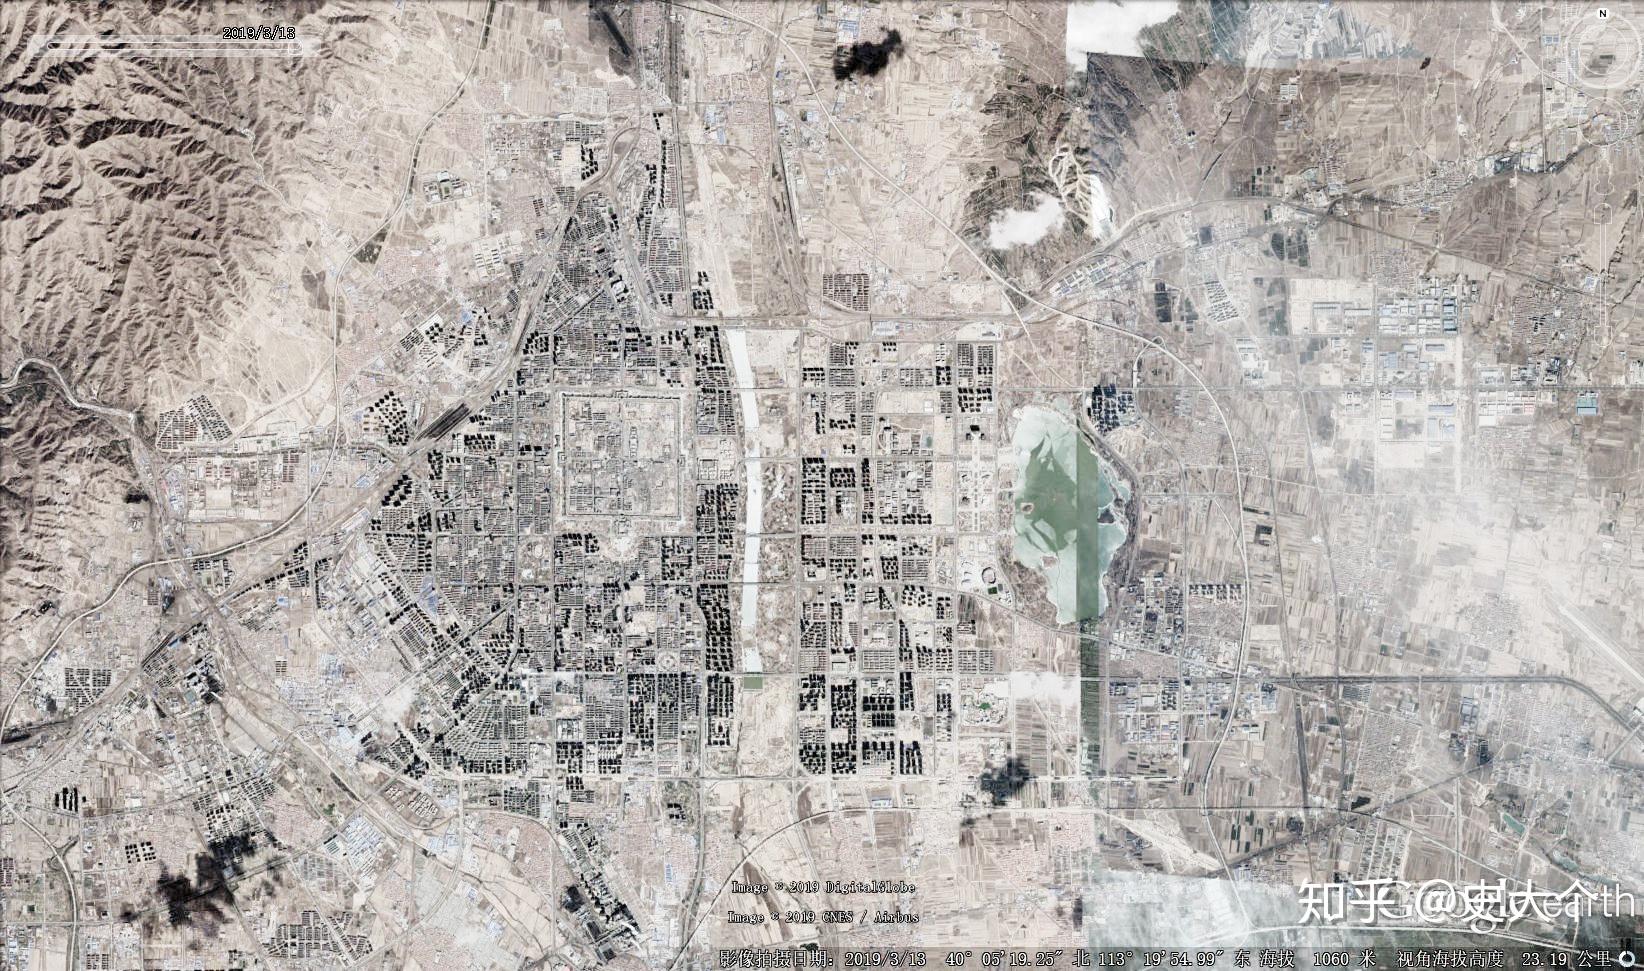 2009年 大同市卫星地图彼时300万人口的大同进行了50万人的搬迁[1],这